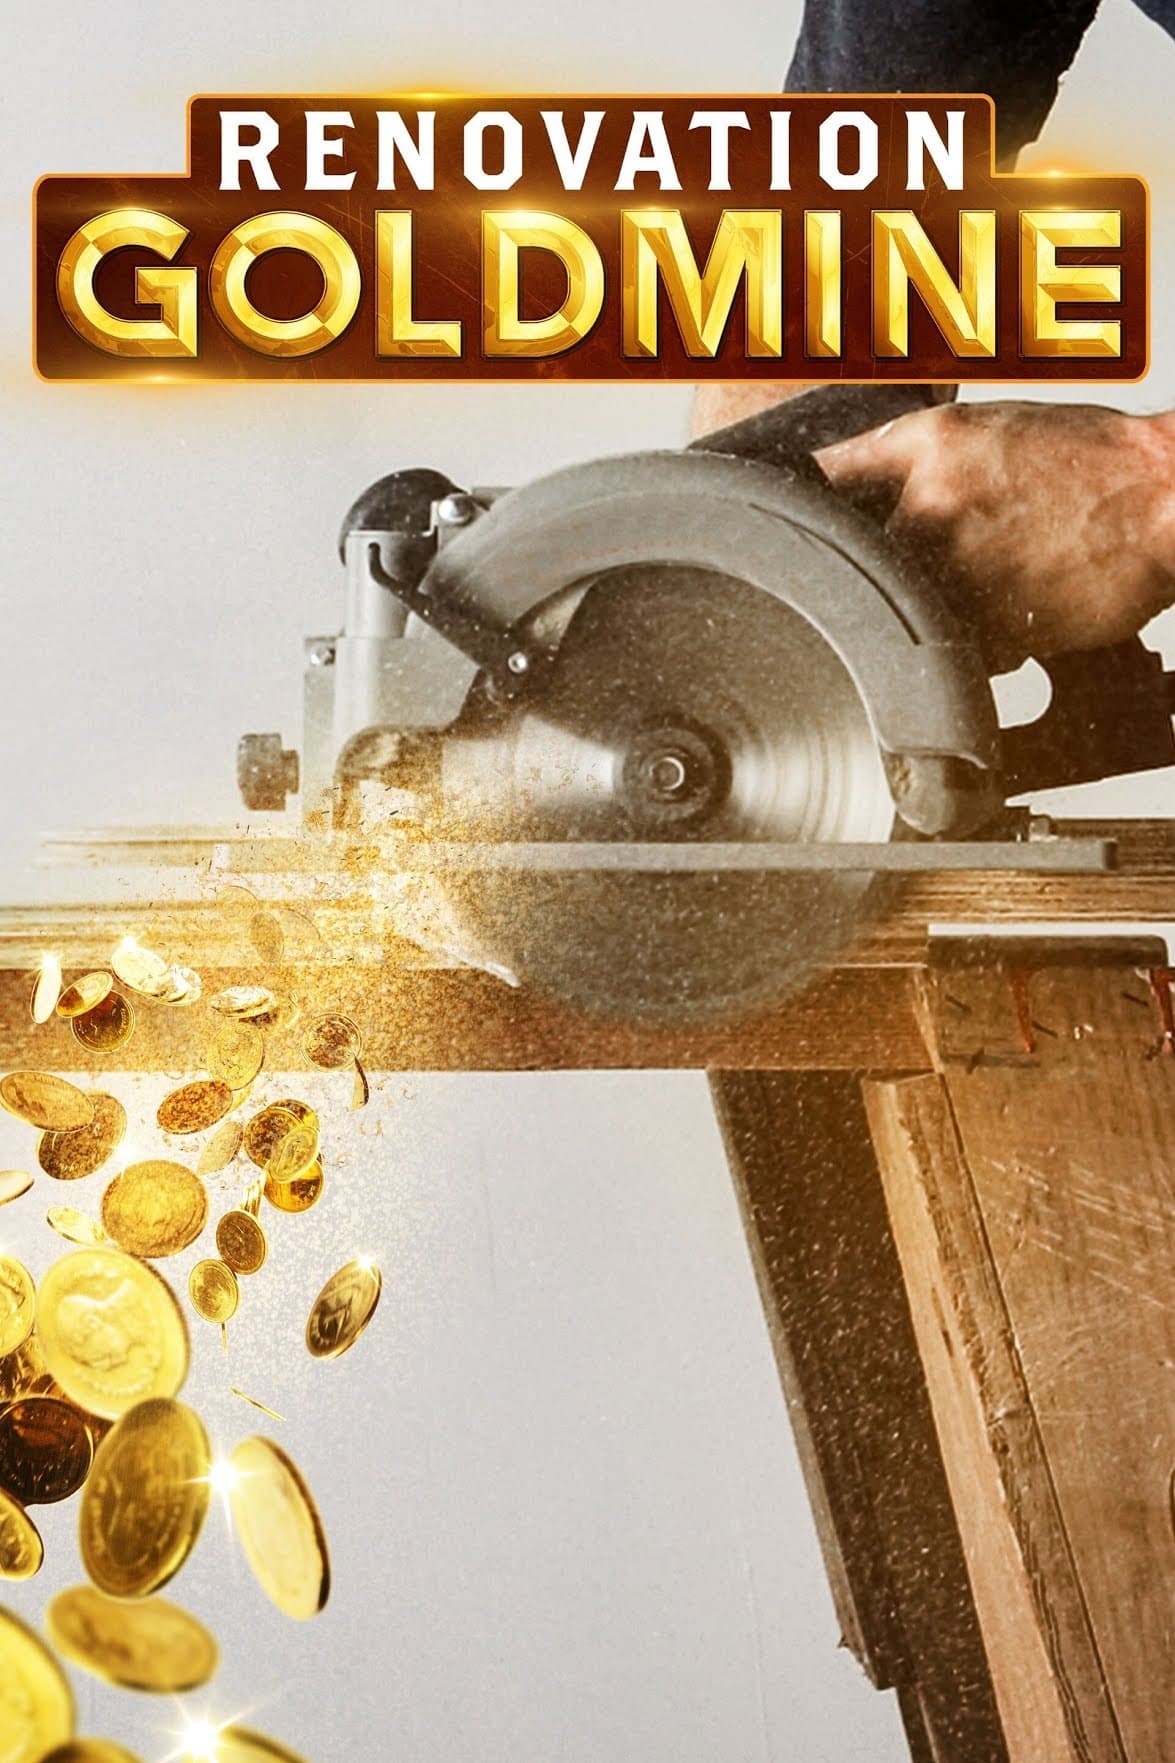 Renovation Goldmine TV Shows About Ova